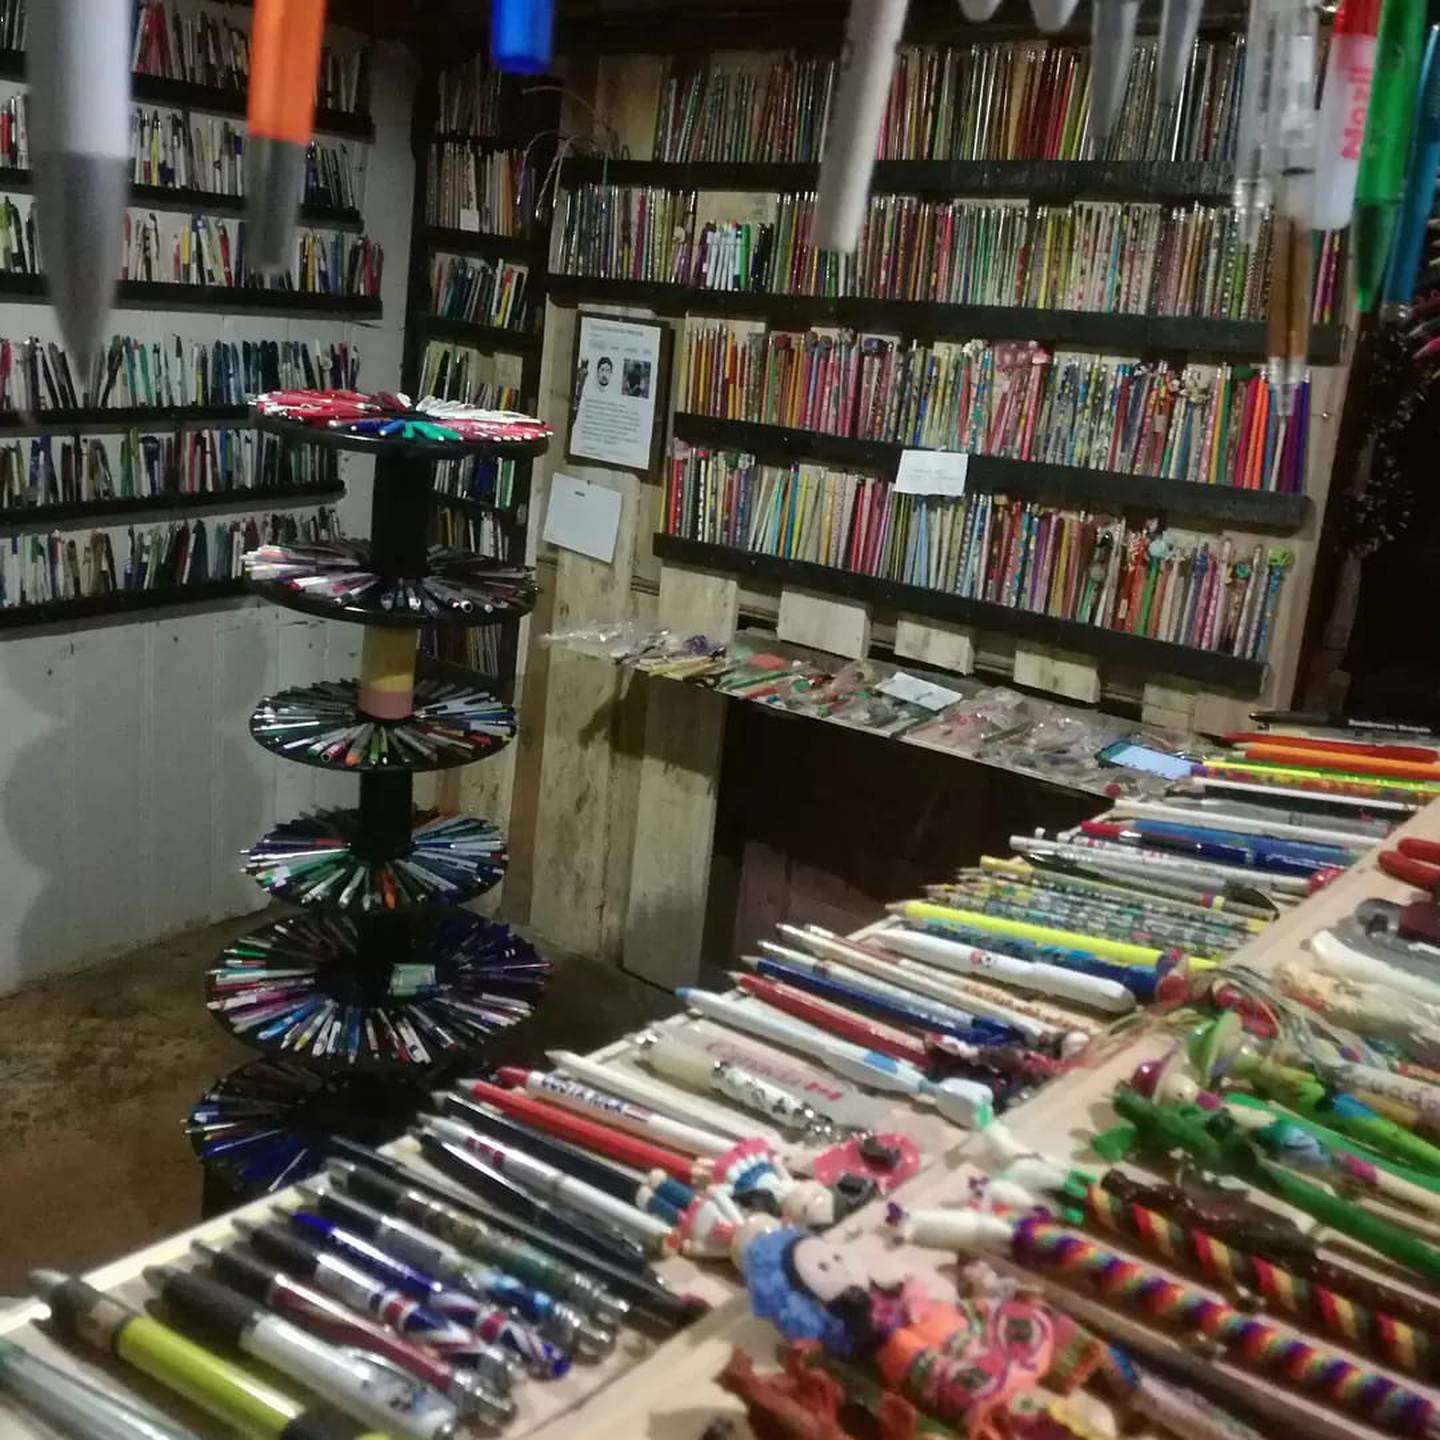 Hay lápices y lapiceros de todos los tamaños y colores. (Cortesía)